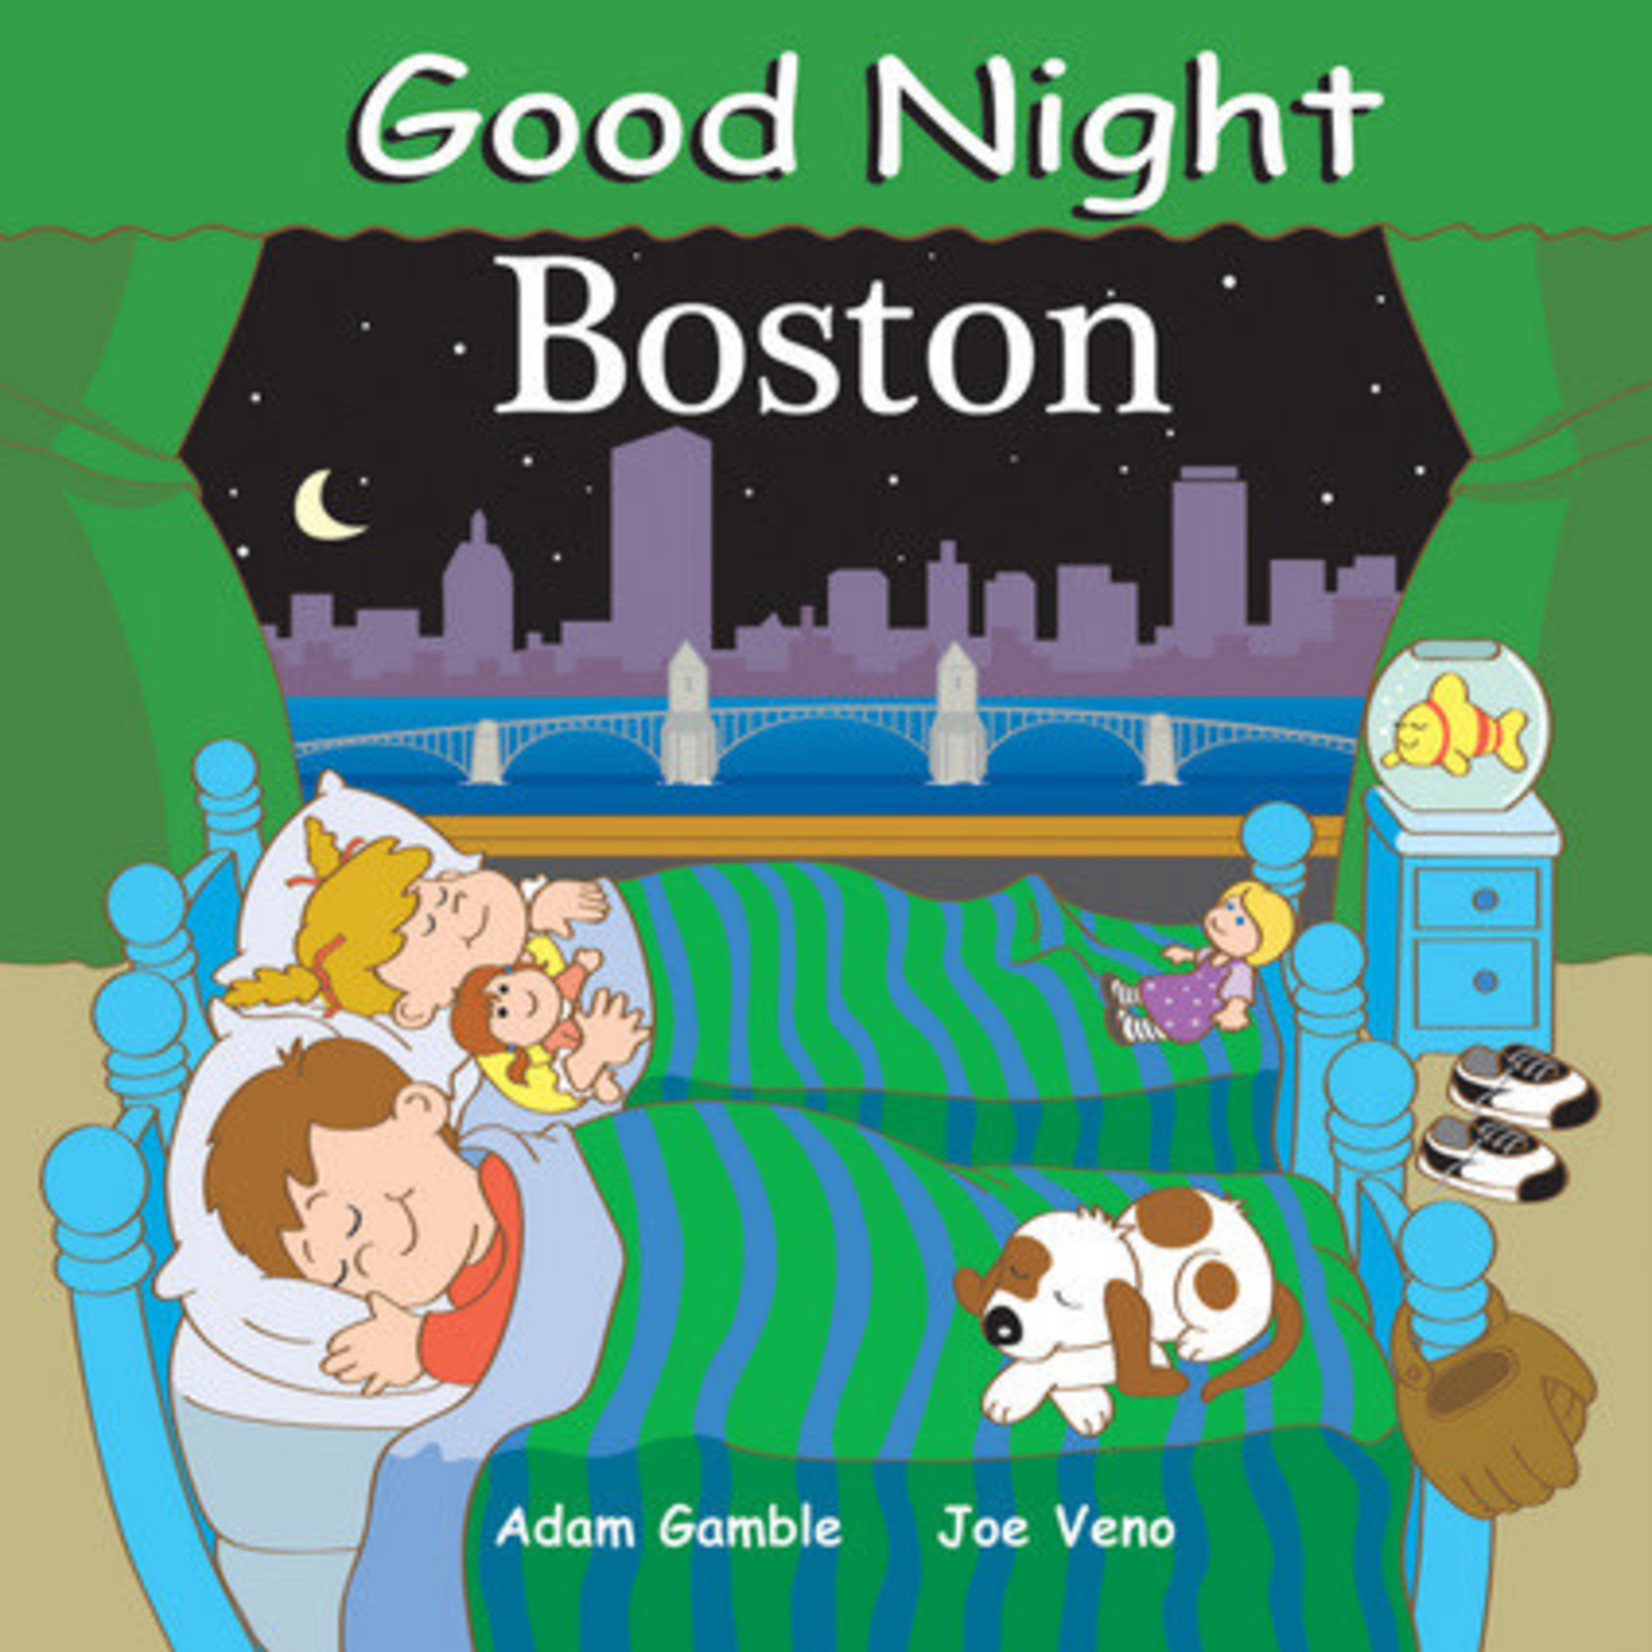 Good Night Boston